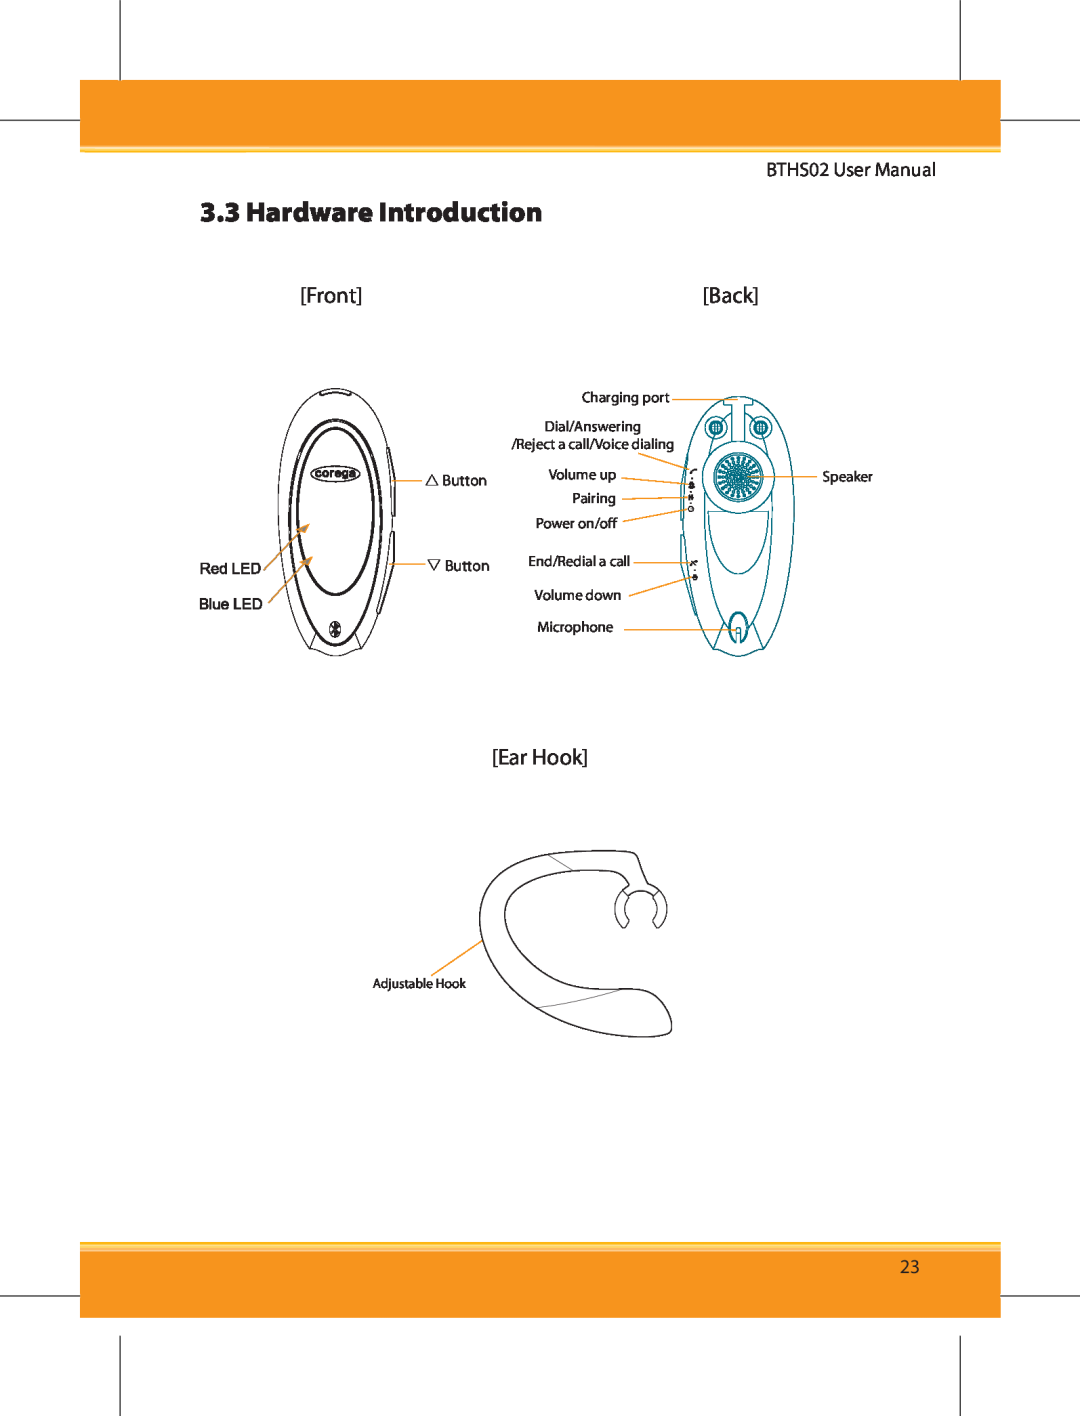 Corega BTHS02 user manual Hardware Introduction, Front, Back, Ear Hook 